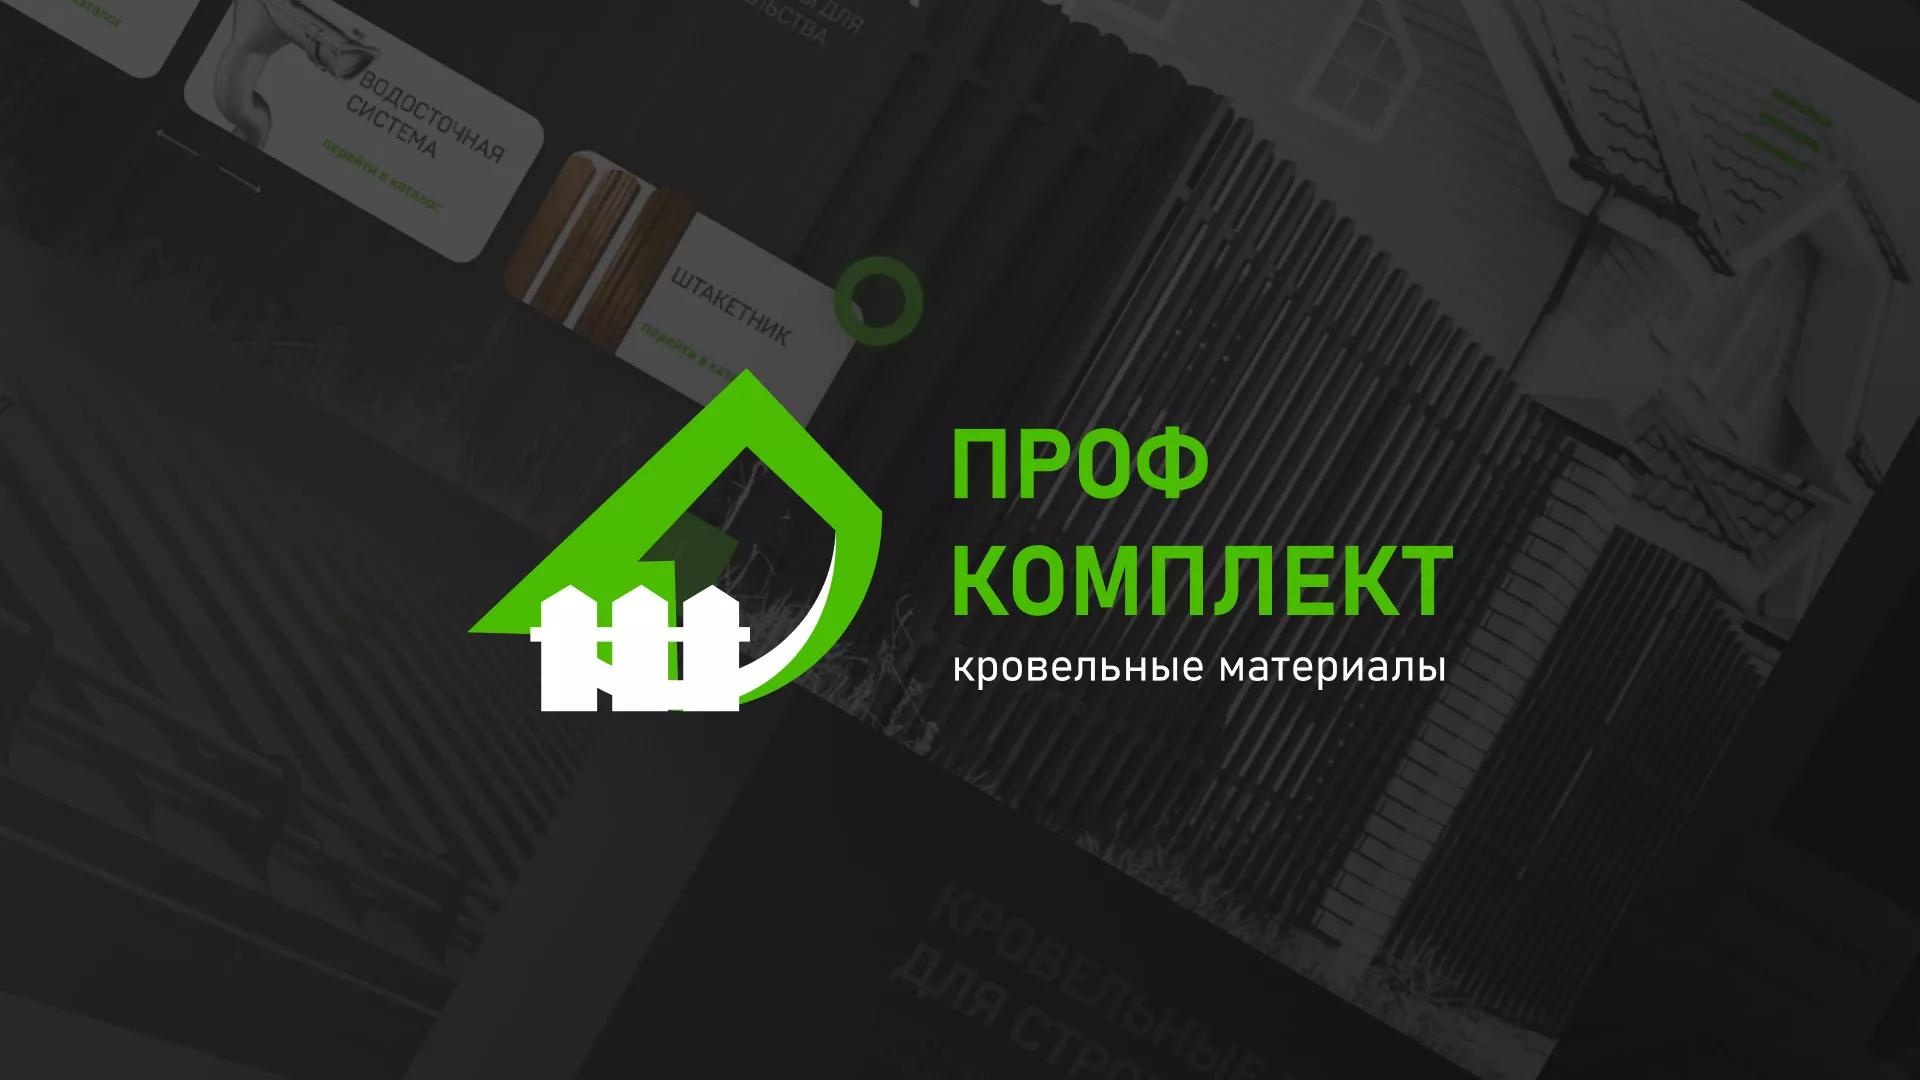 Создание сайта компании «Проф Комплект» в Чкаловском